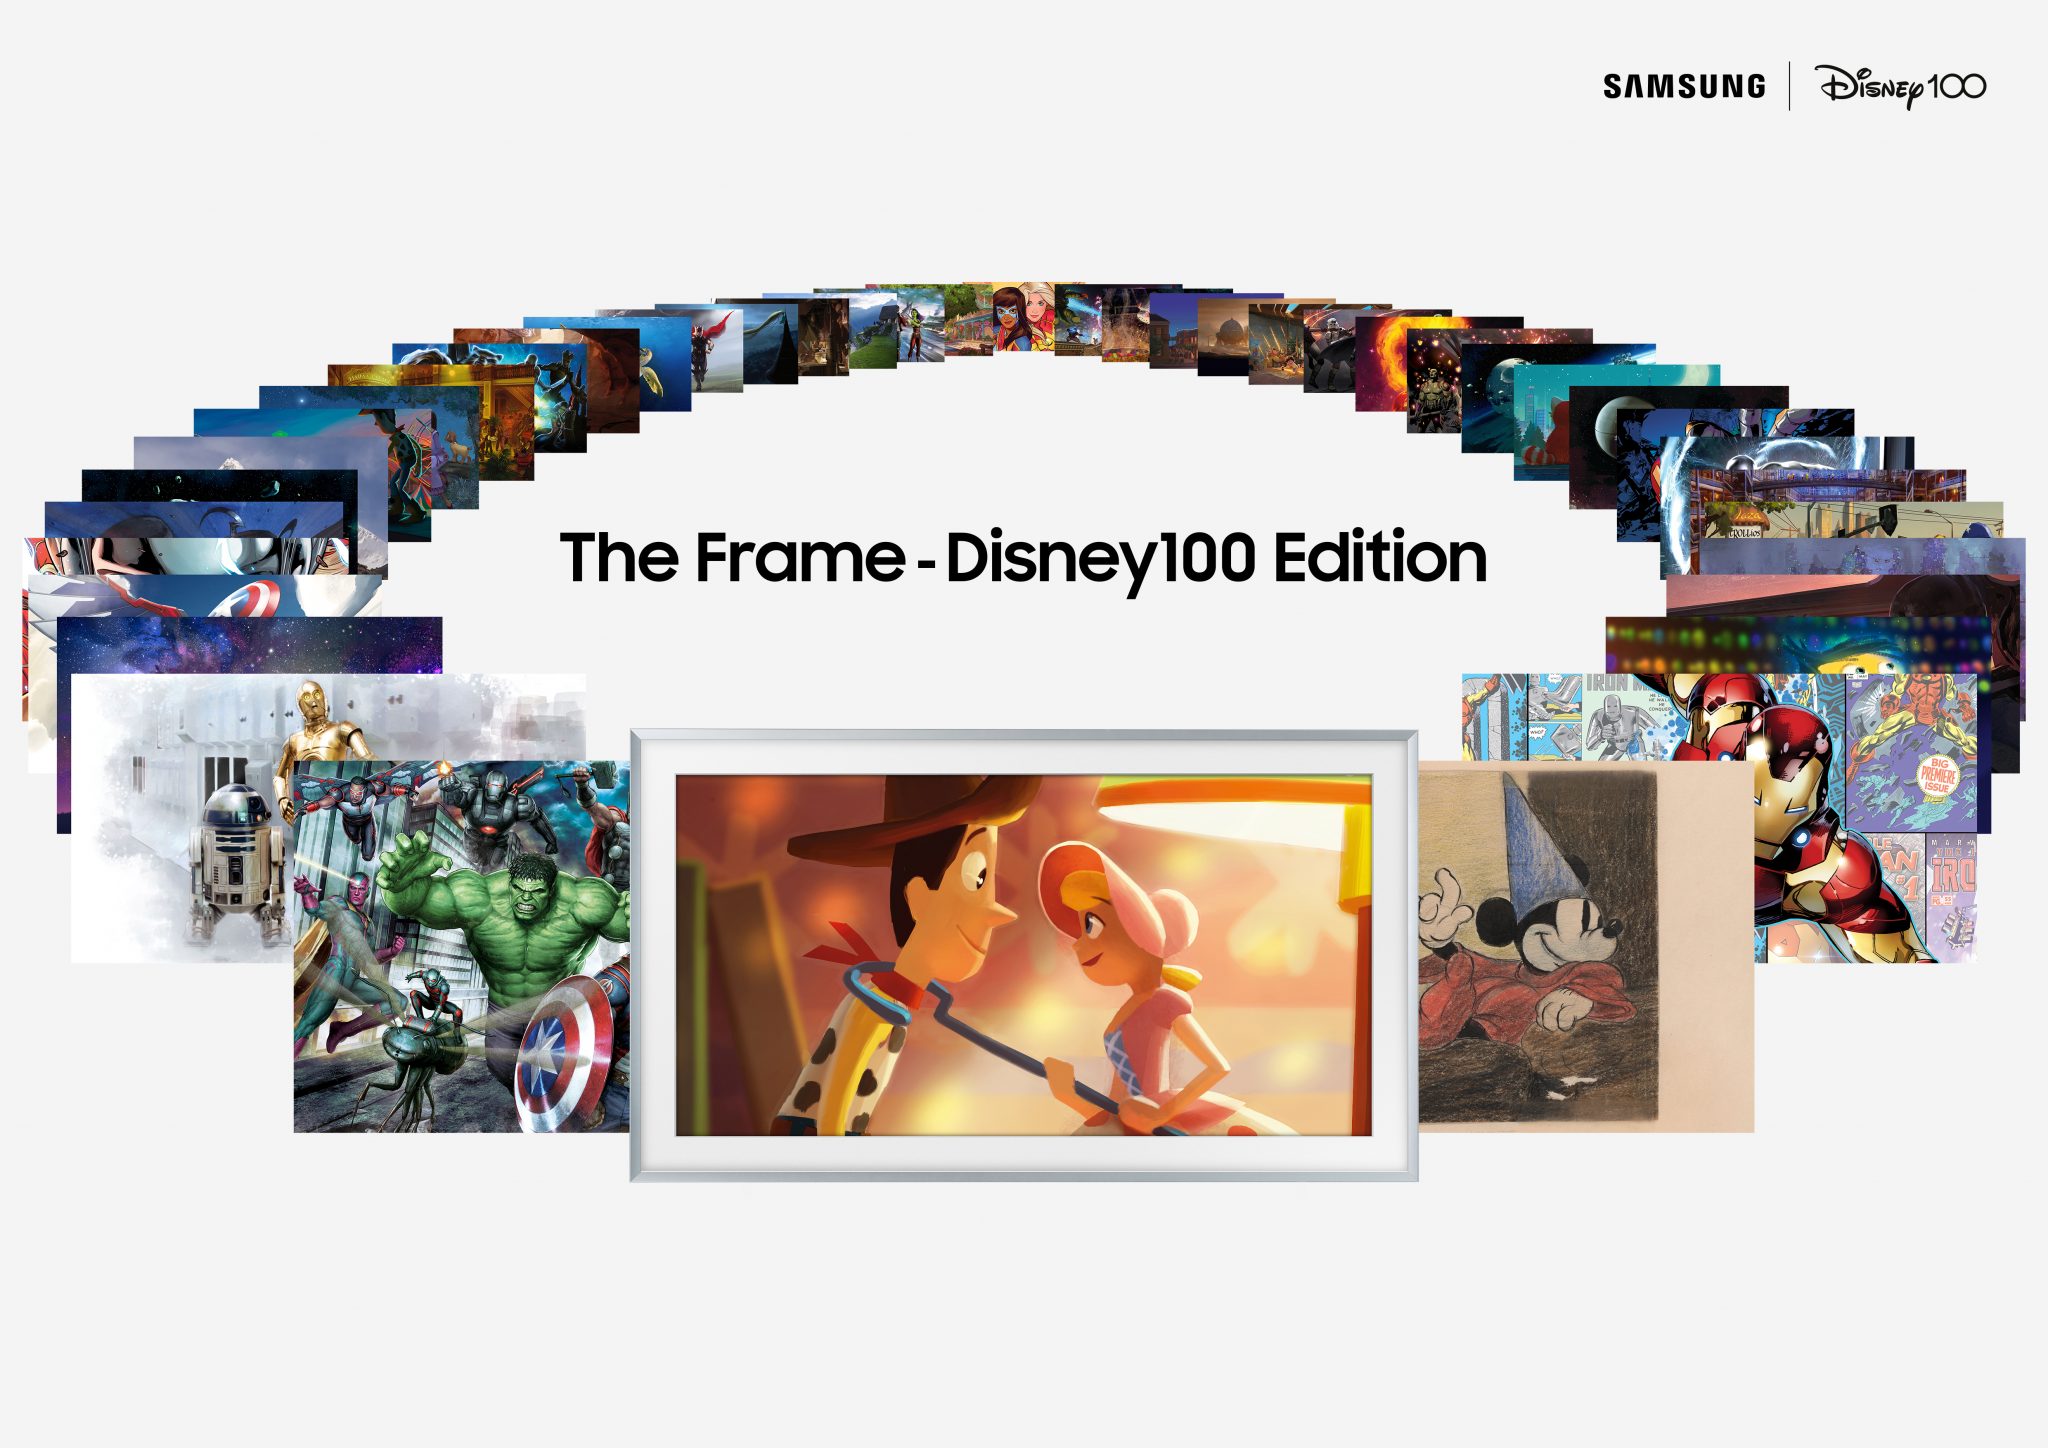 Samsung recupera el televisor The Frame TV Disney 100 Edition con pantallas de 55, 65 y 75 pulgadas